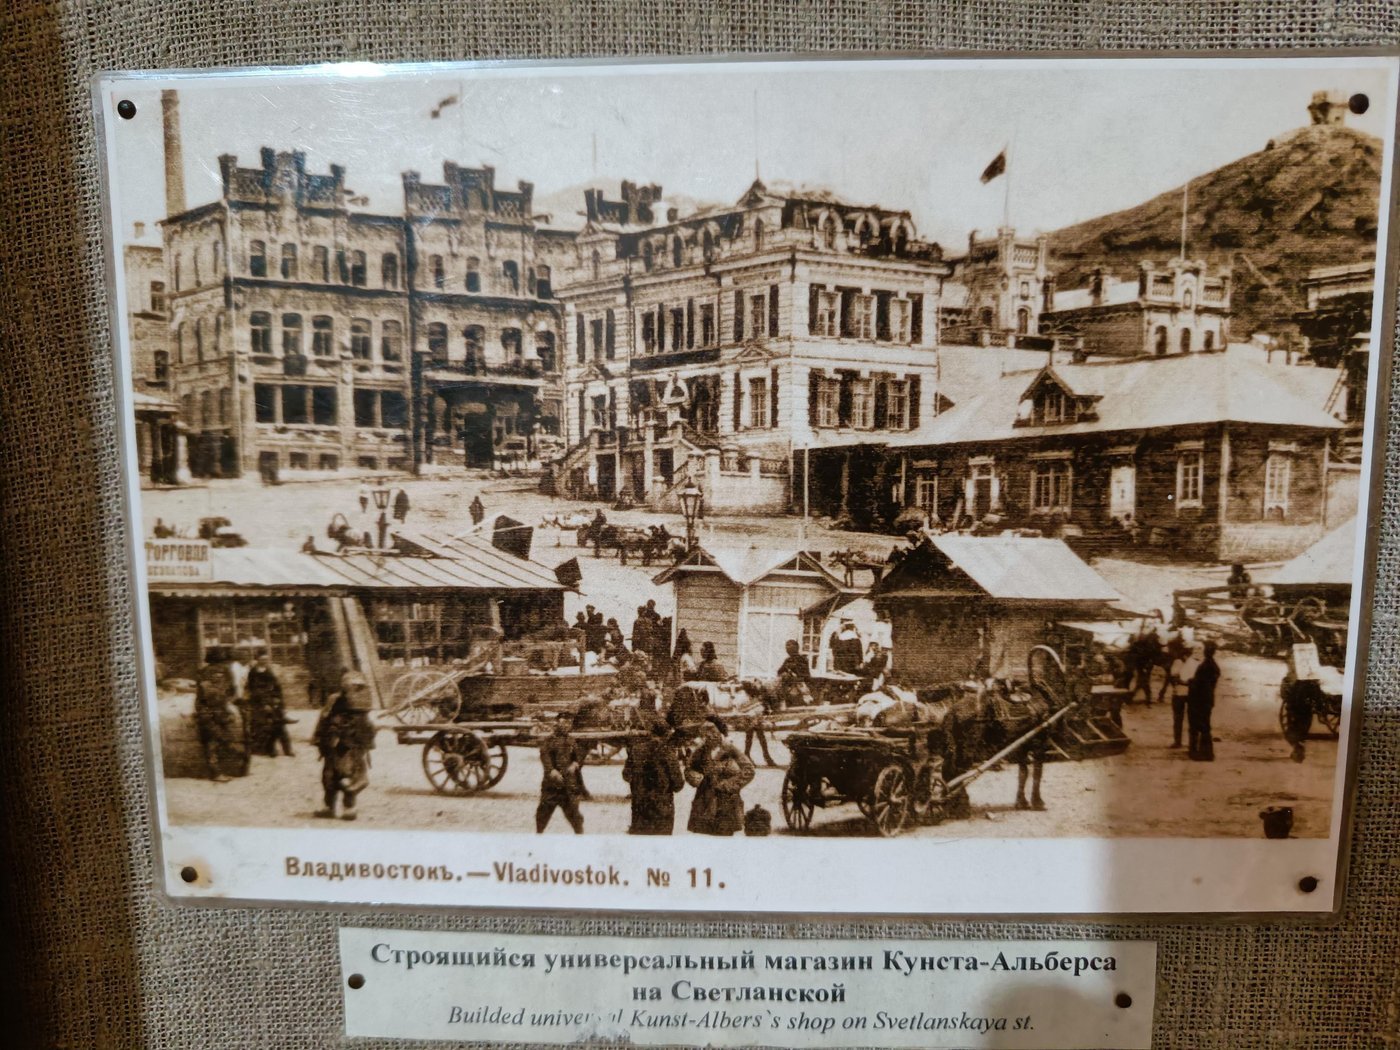 Владивостокский ГУМ — старейший торговый дом в городе и одно из самых красивых зданий его центра